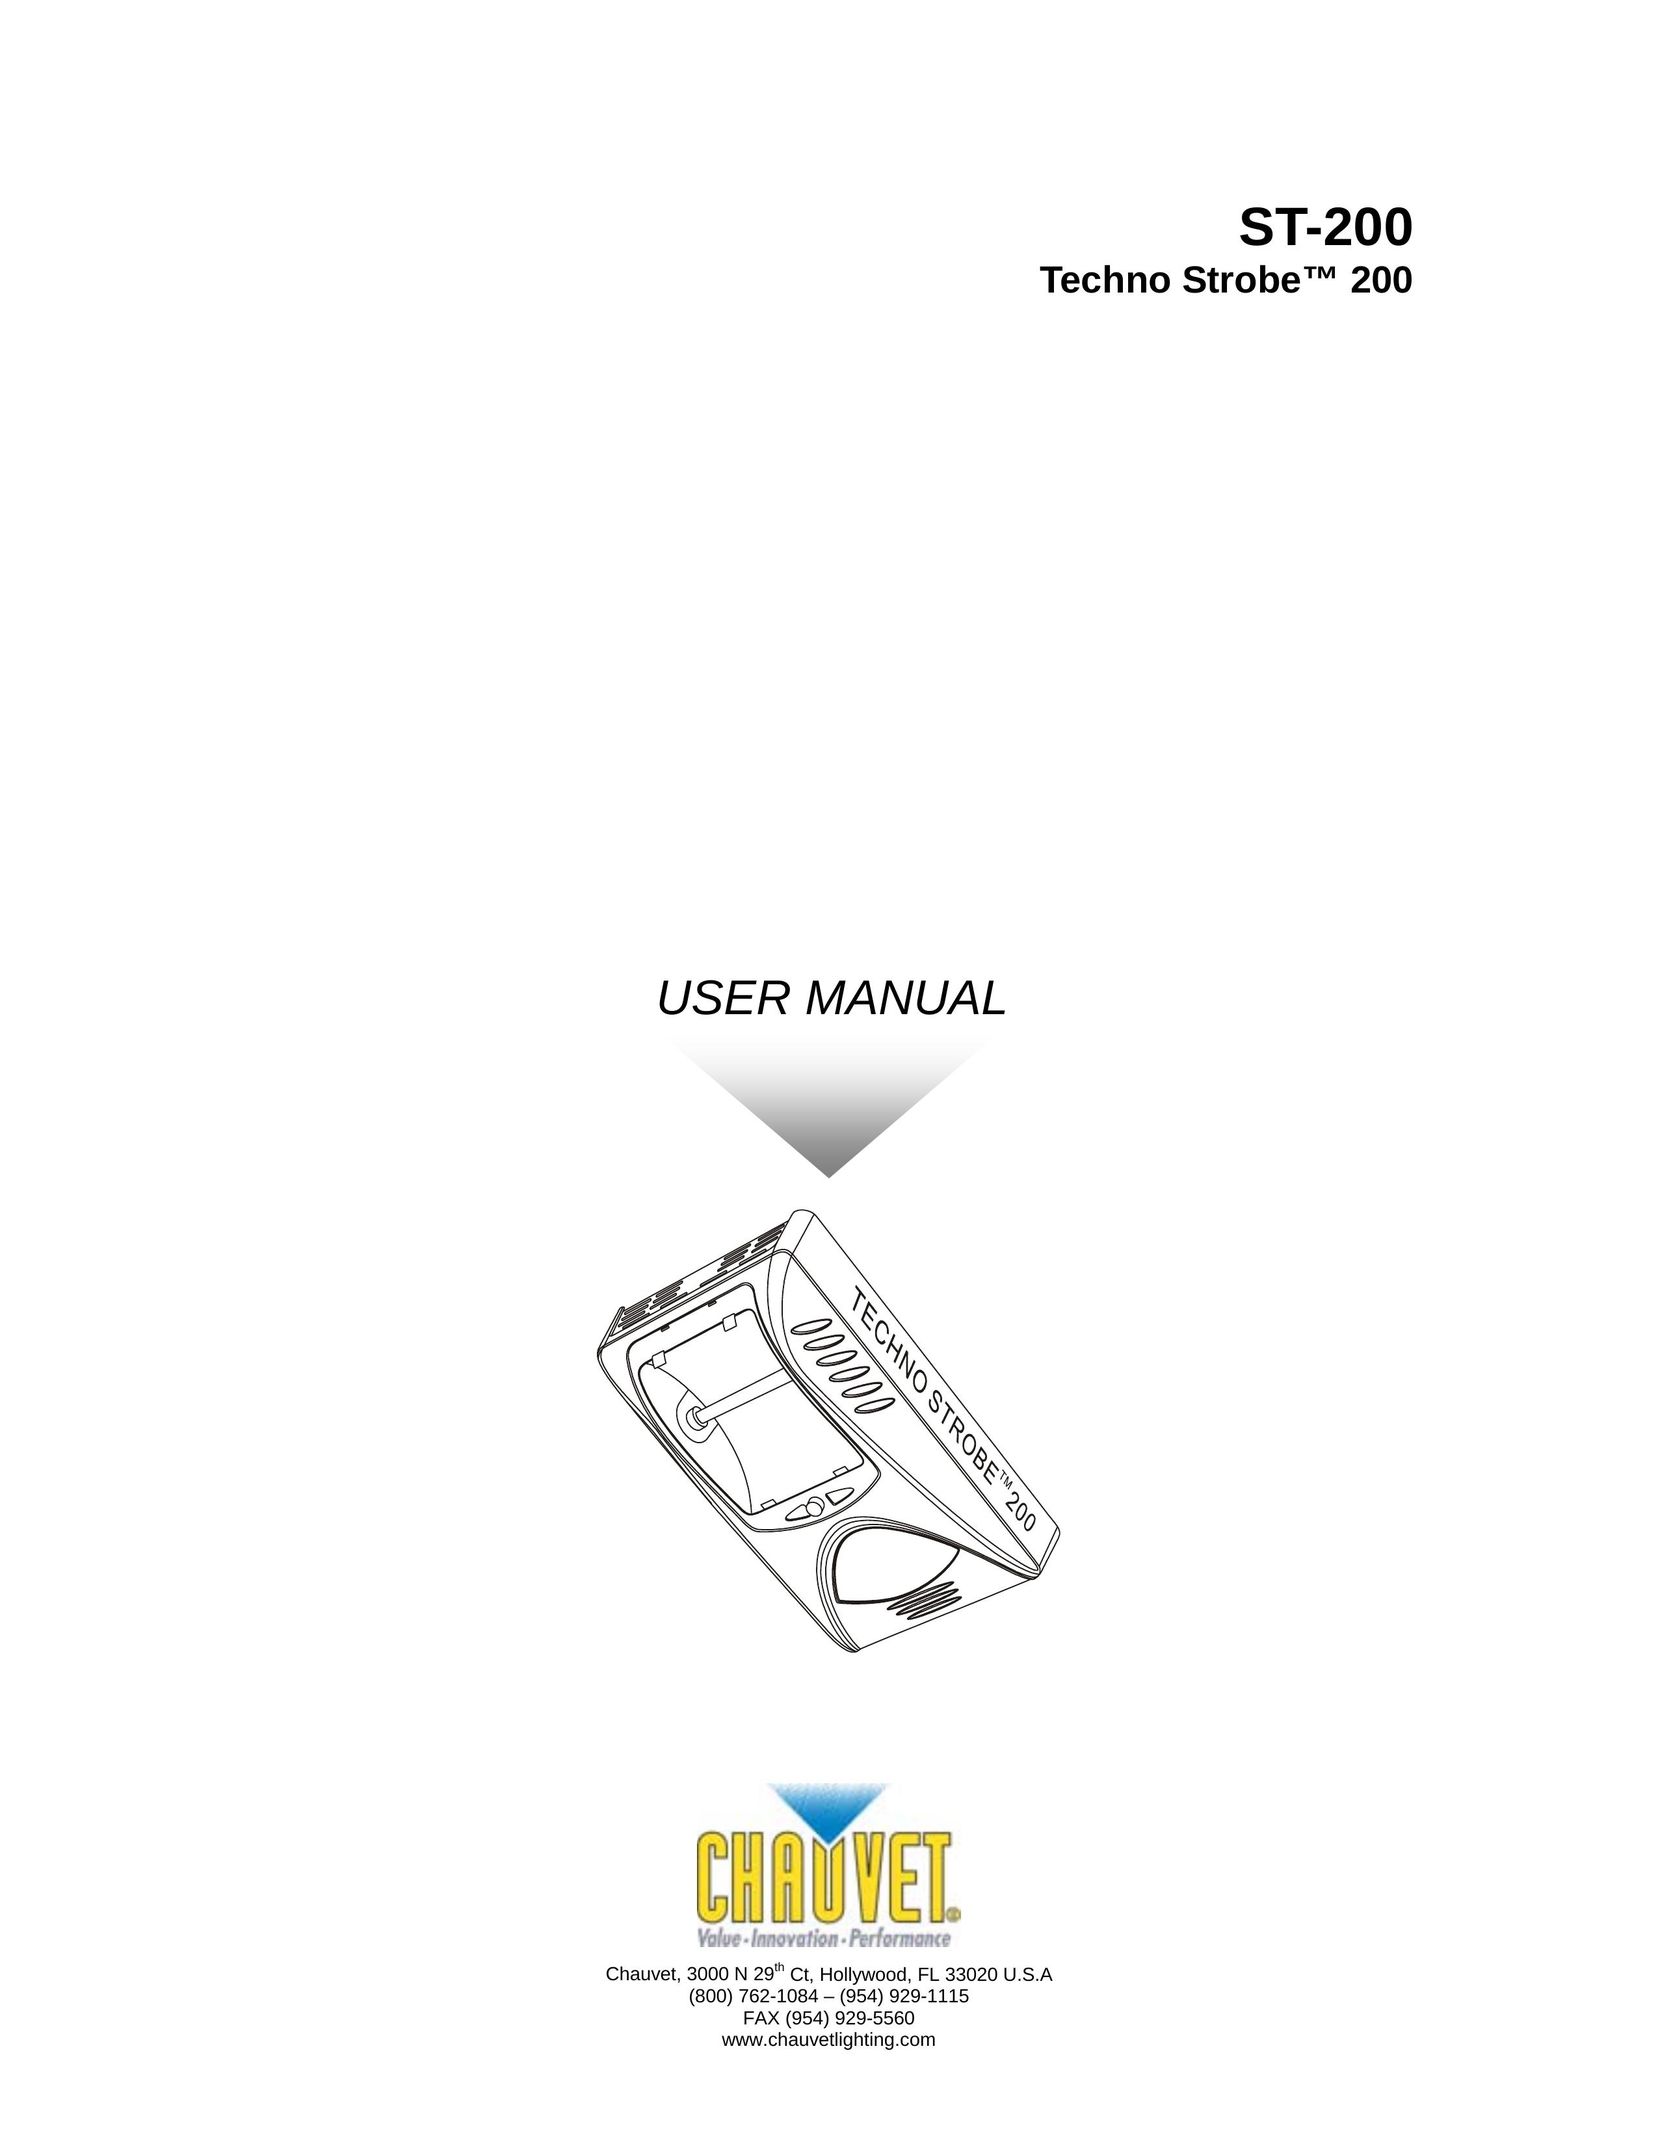 Chauvet Model ST-200 Work Light User Manual